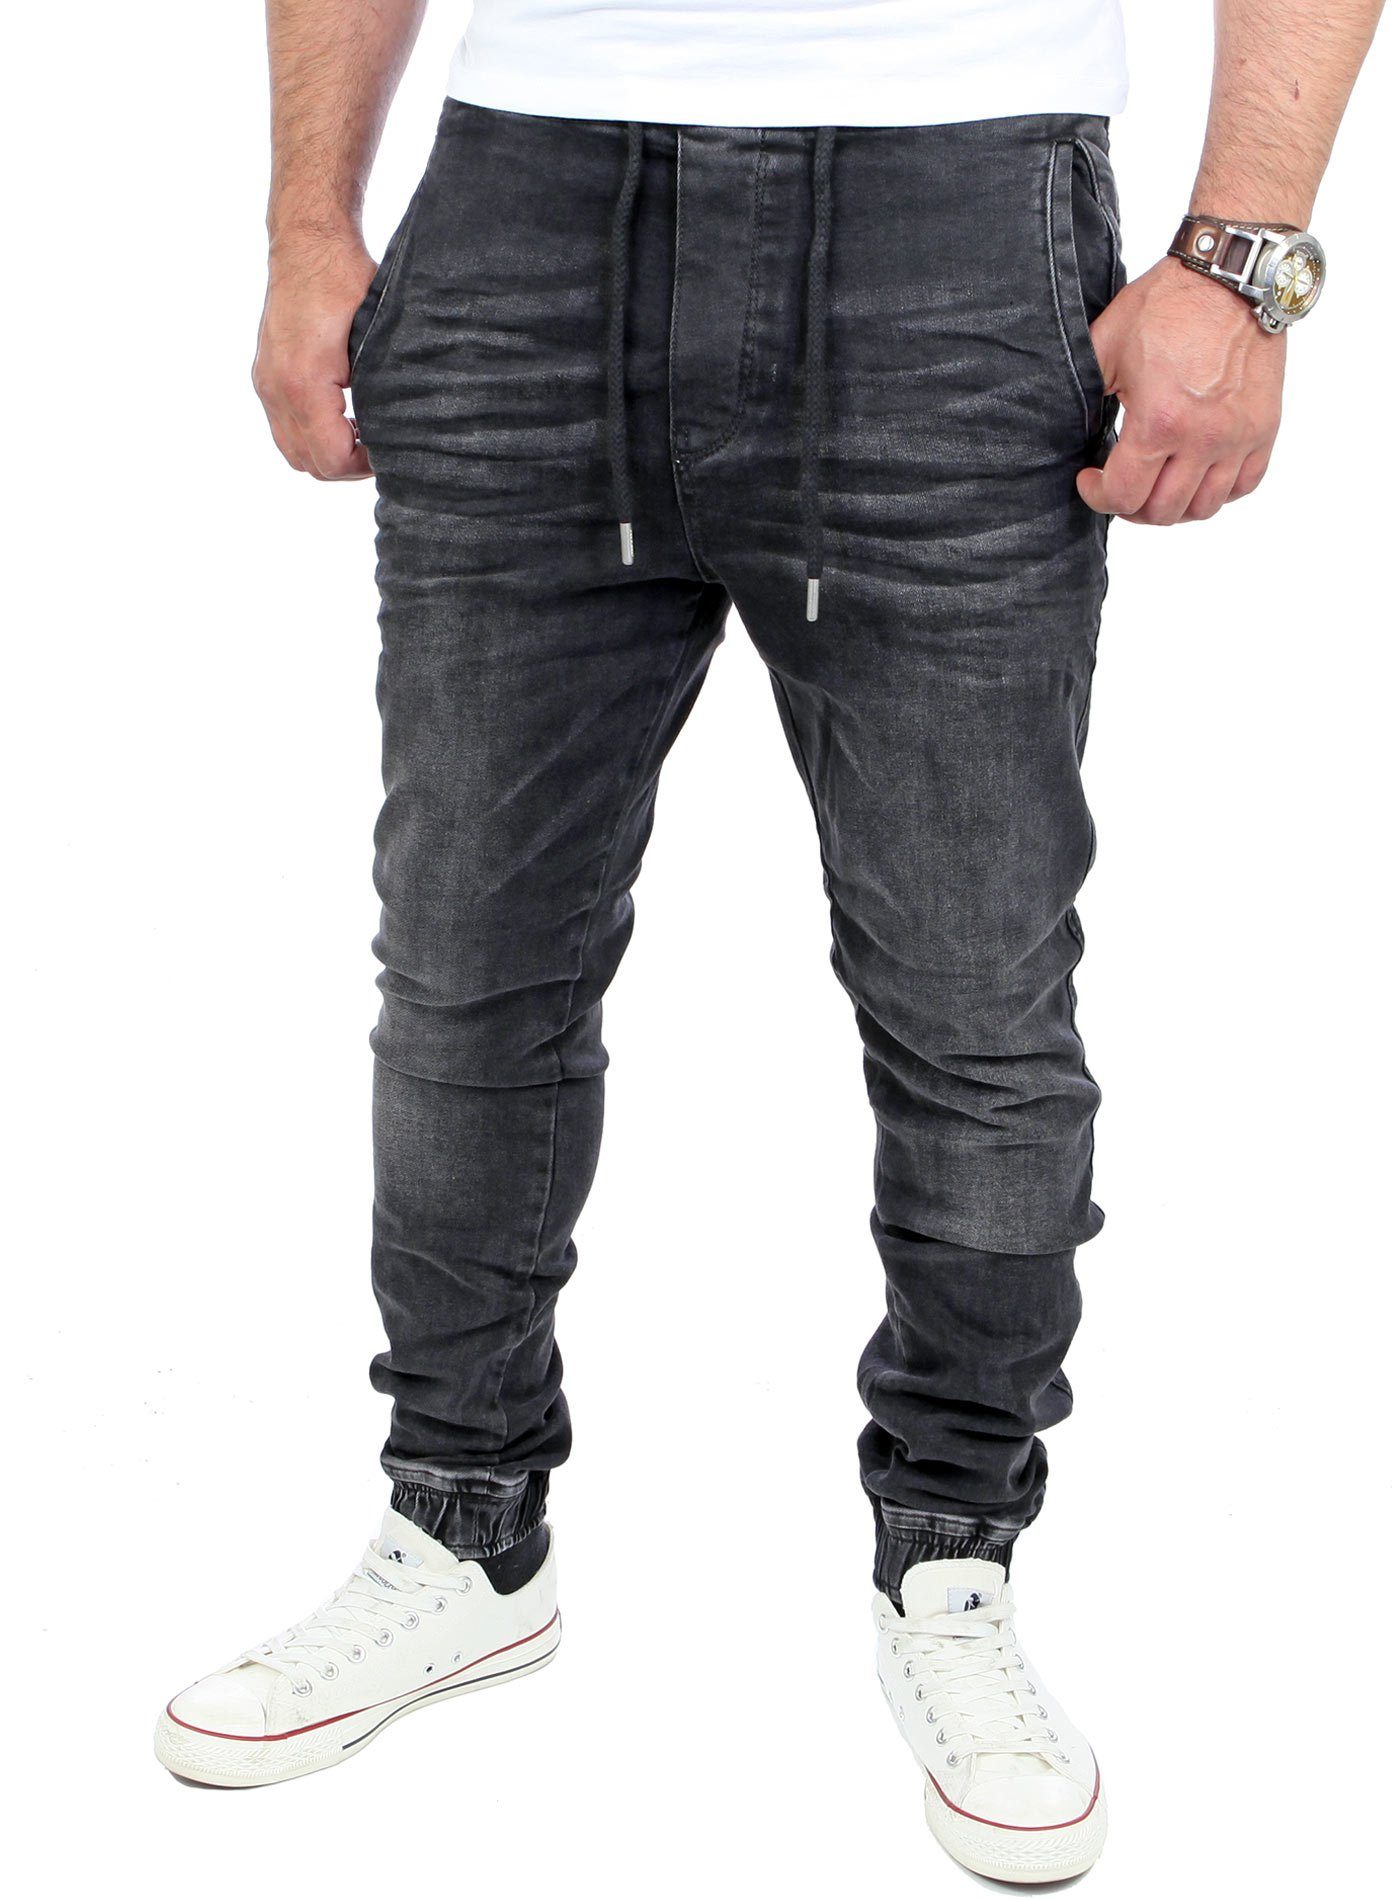 Jeans-Herren Slim Jogging-Hose Fit Reslad Style Reslad RS-2071 Slim schwarz Casual Jogging-Denim Stretch Stretch-Jeans Fit